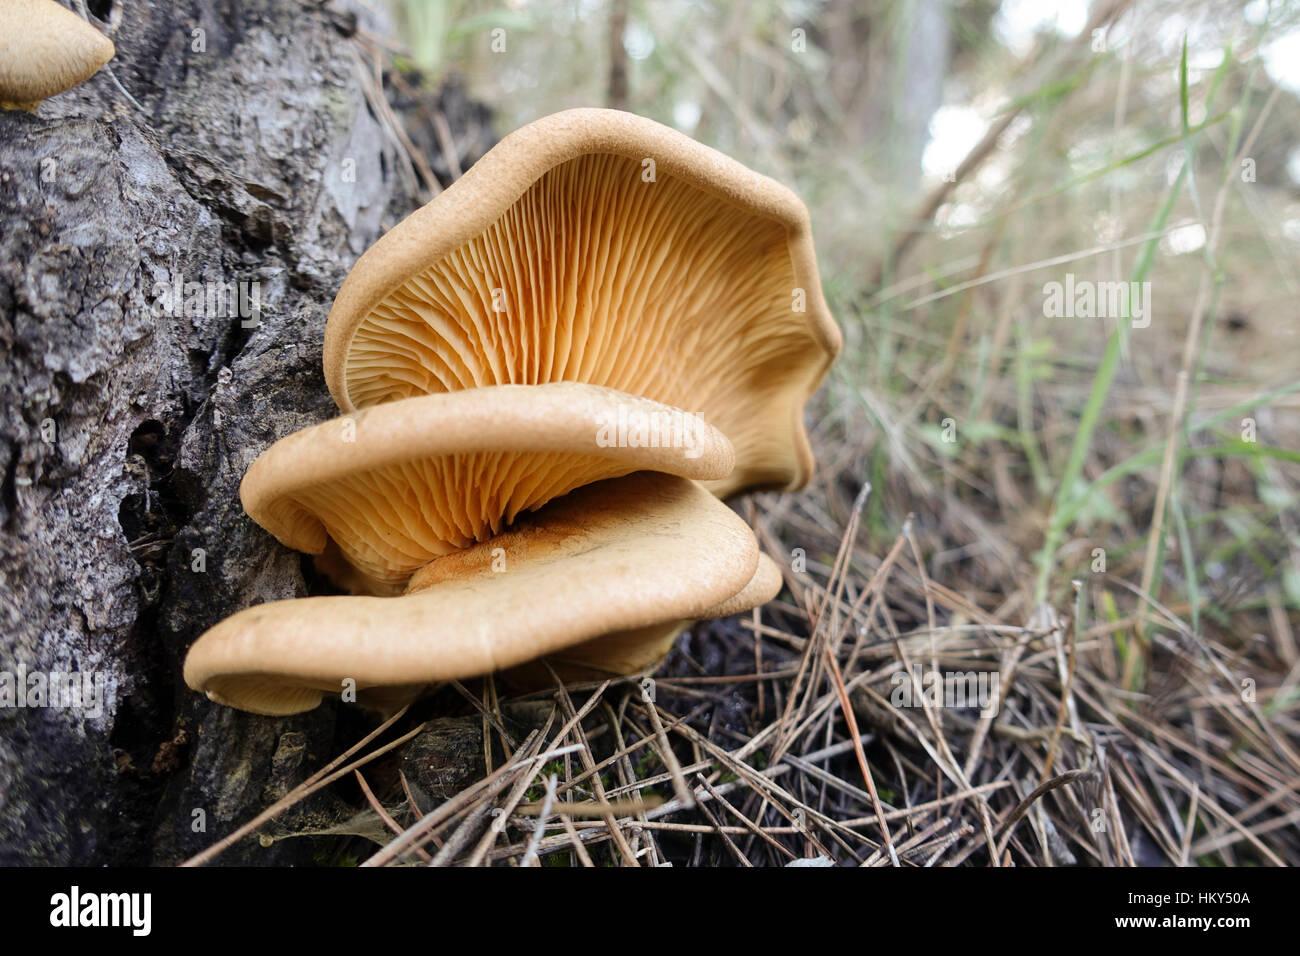 Pleurotus sp on tree, gilled mushroom, mushrooms, at foot of tree, Spain. Stock Photo